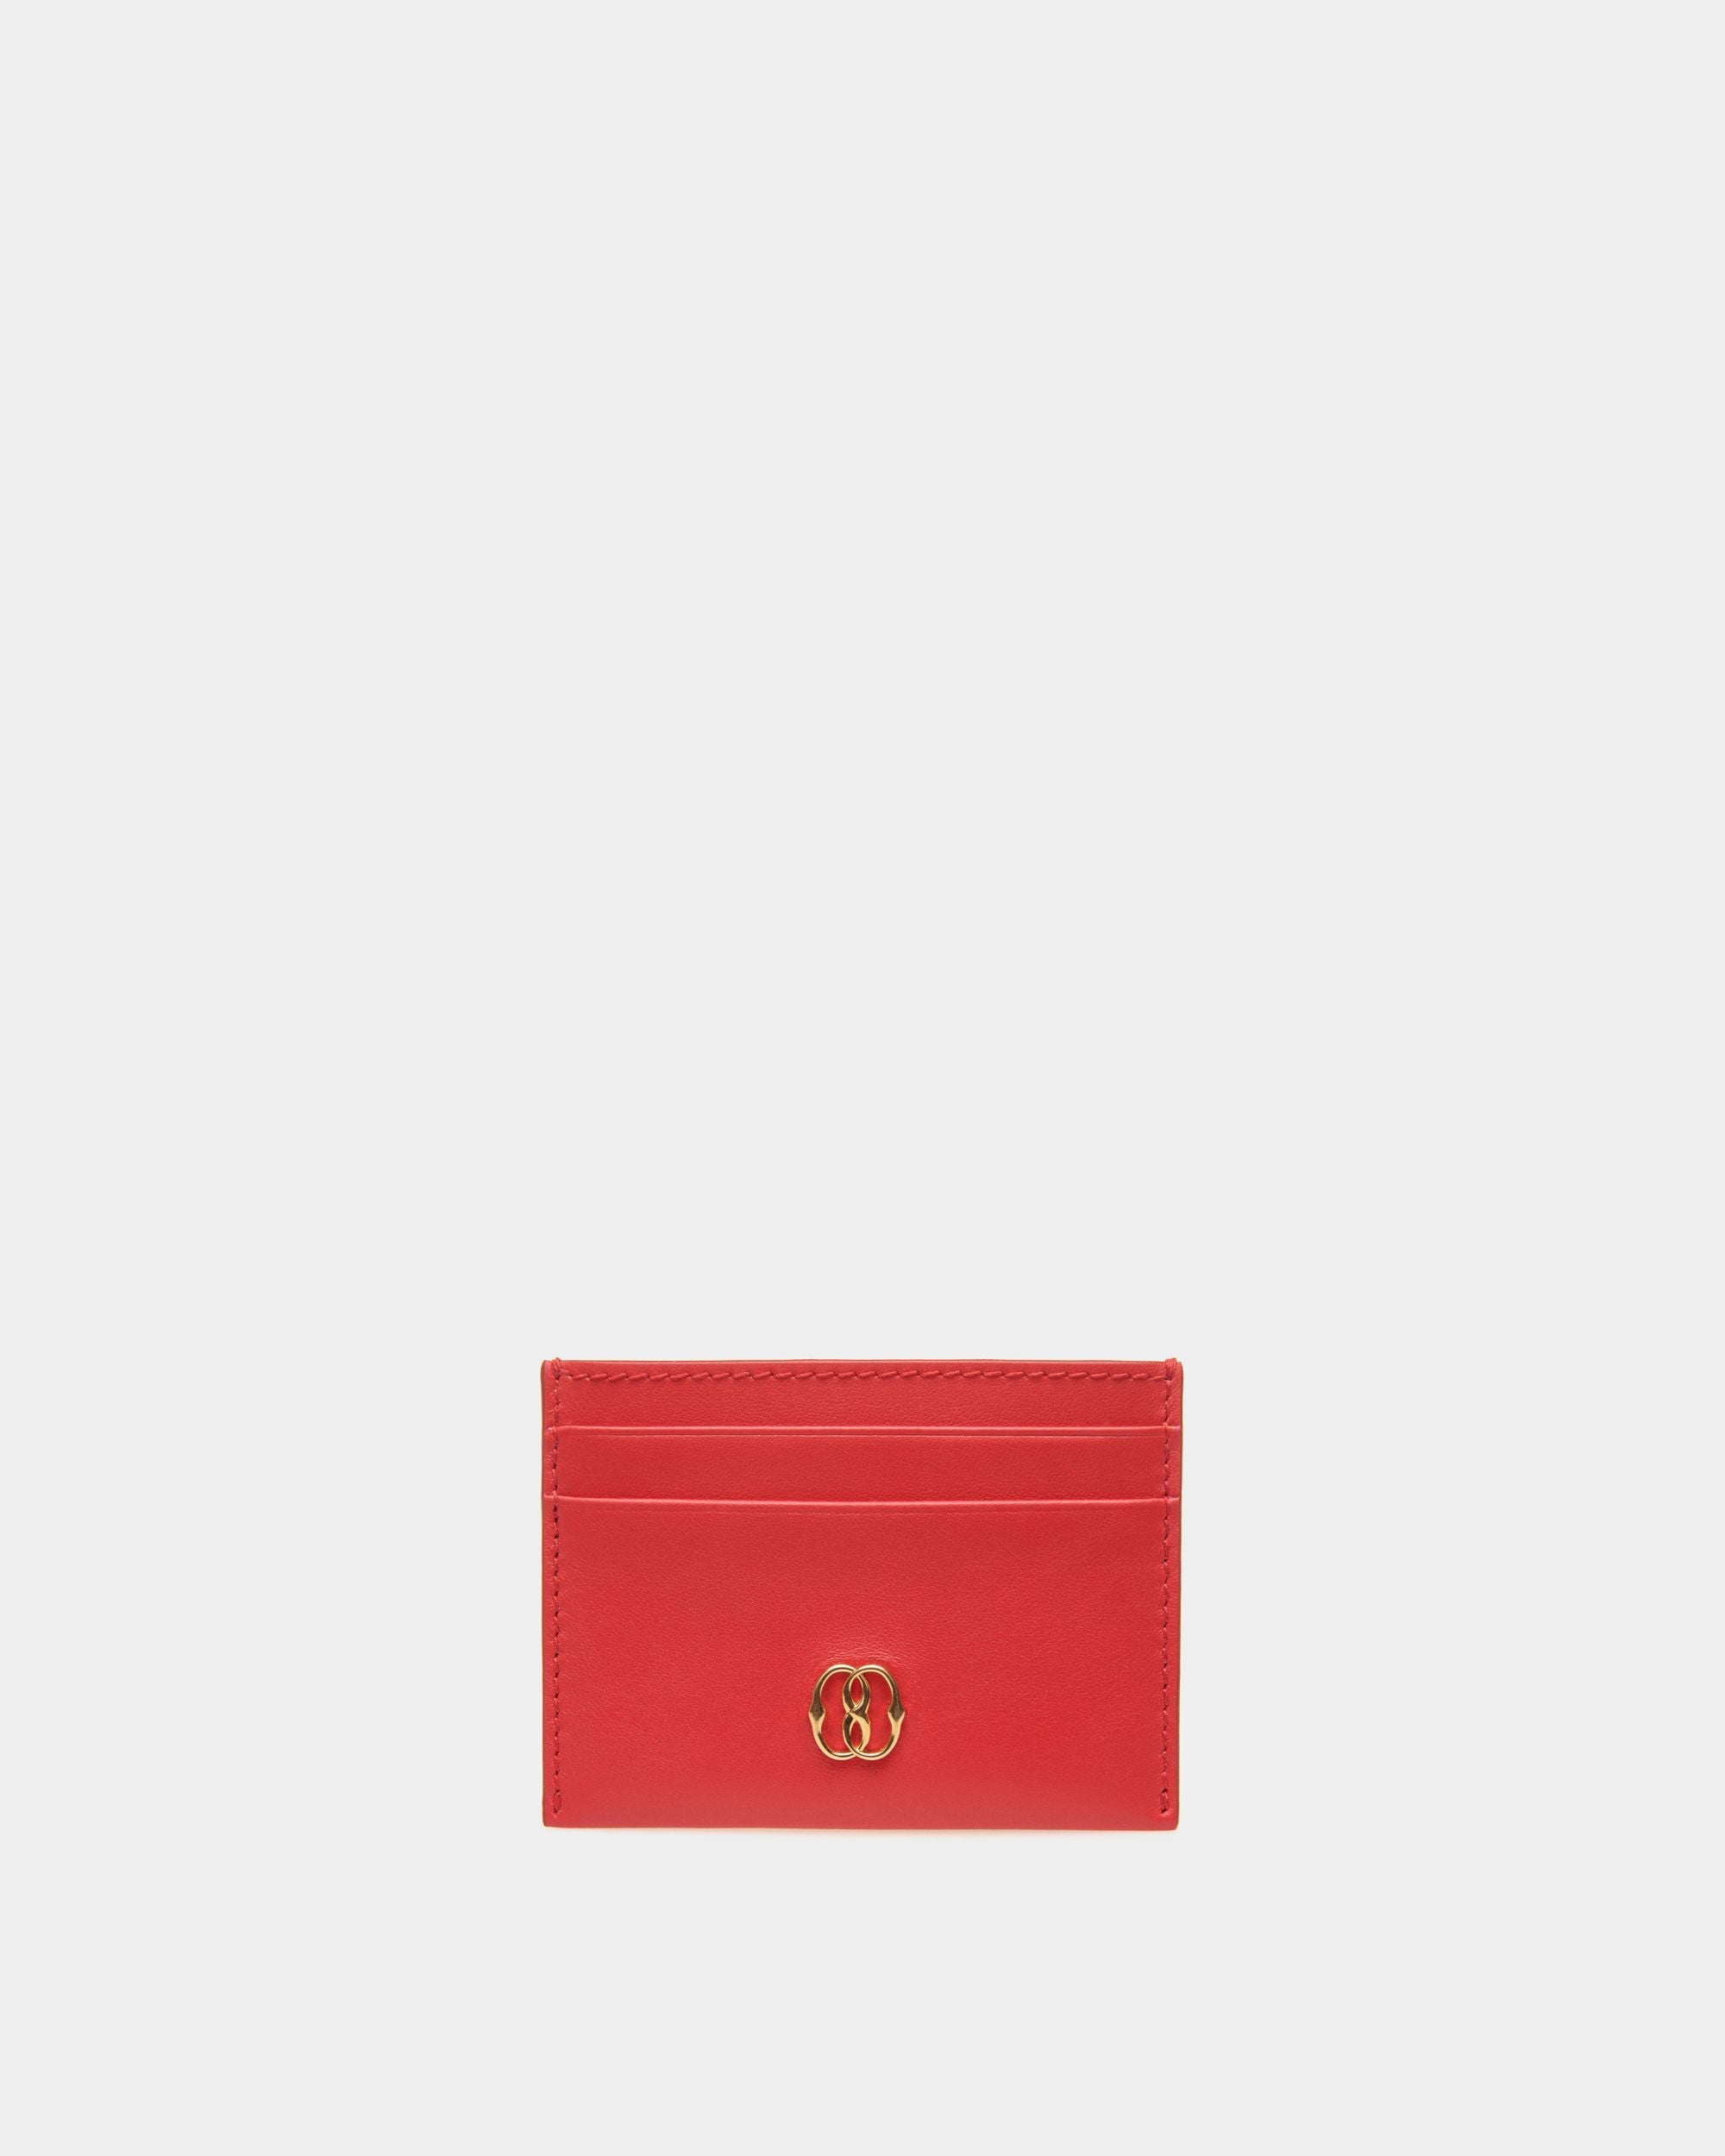 Emblem | Porte-cartes pour femme en cuir rouge | Bally | Still Life Devant